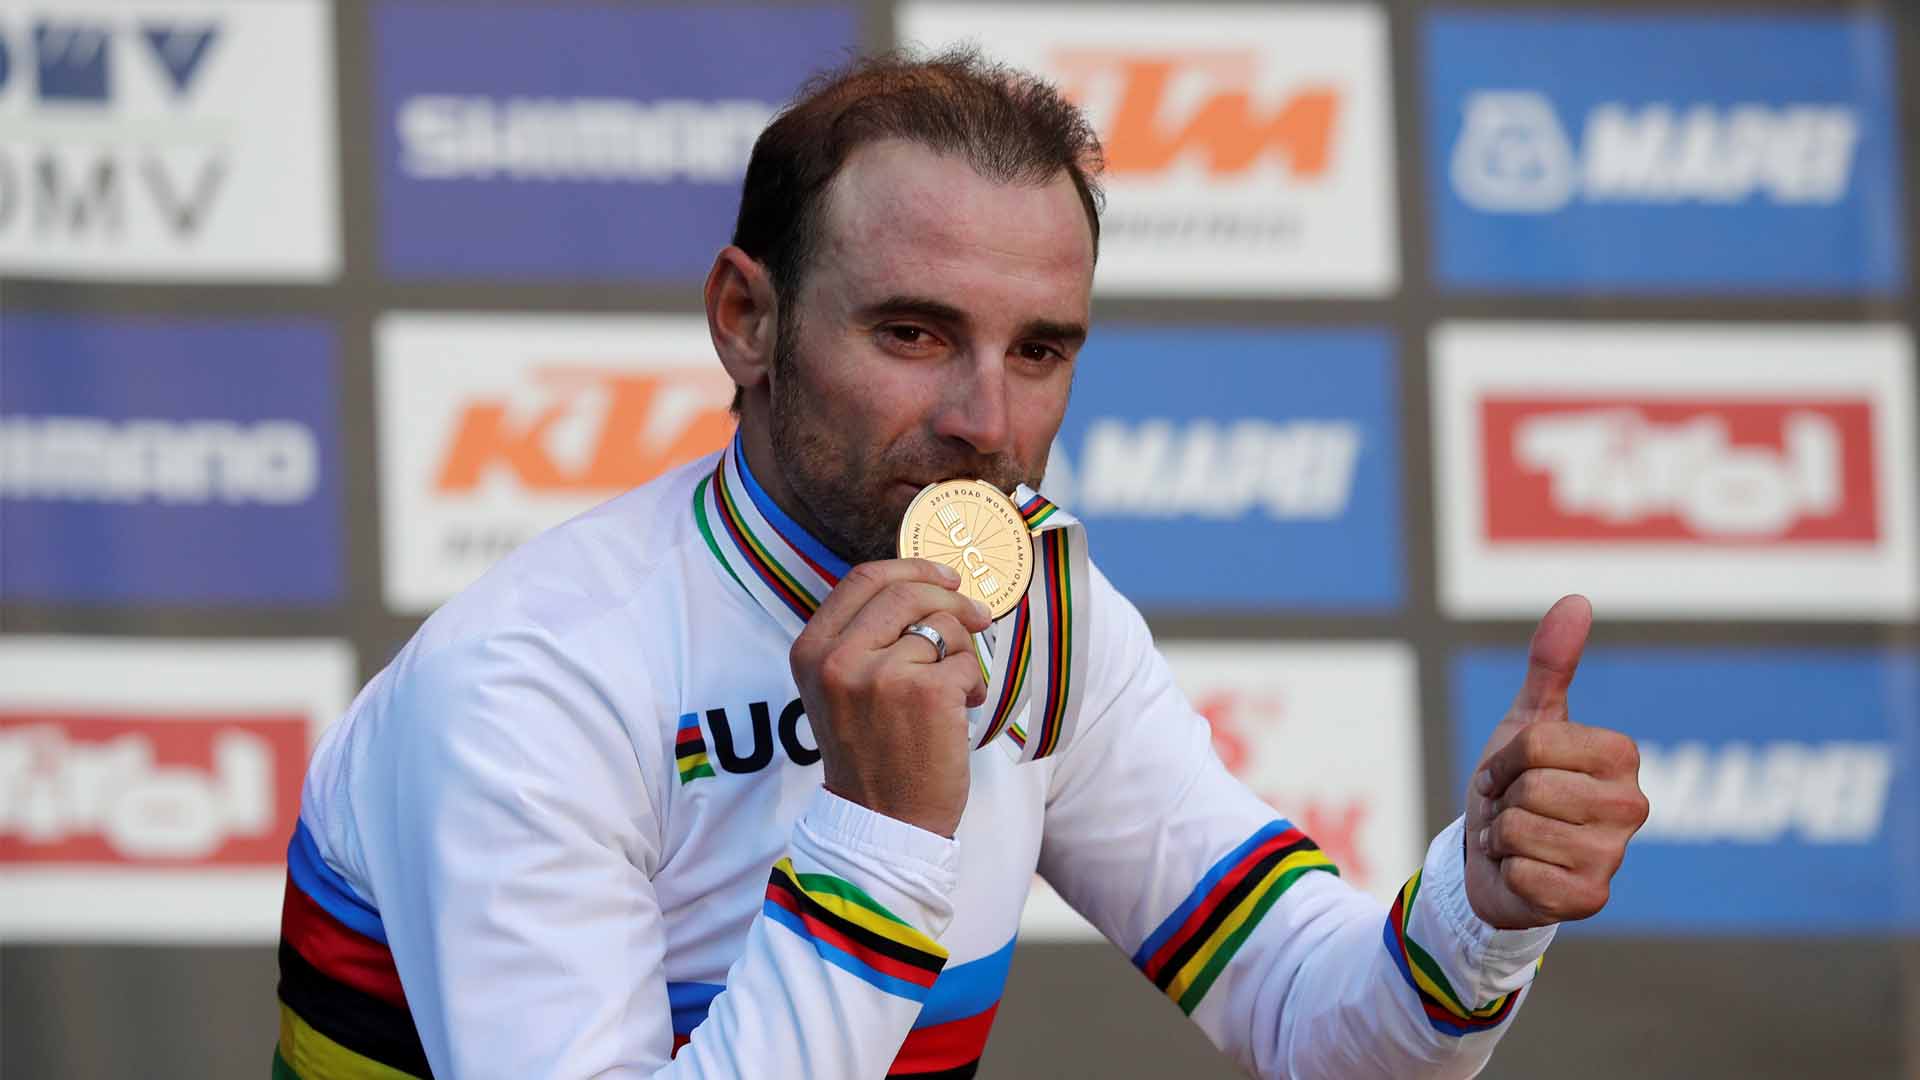 Alejandro Valverde se proclama campeón del mundo de ciclismo